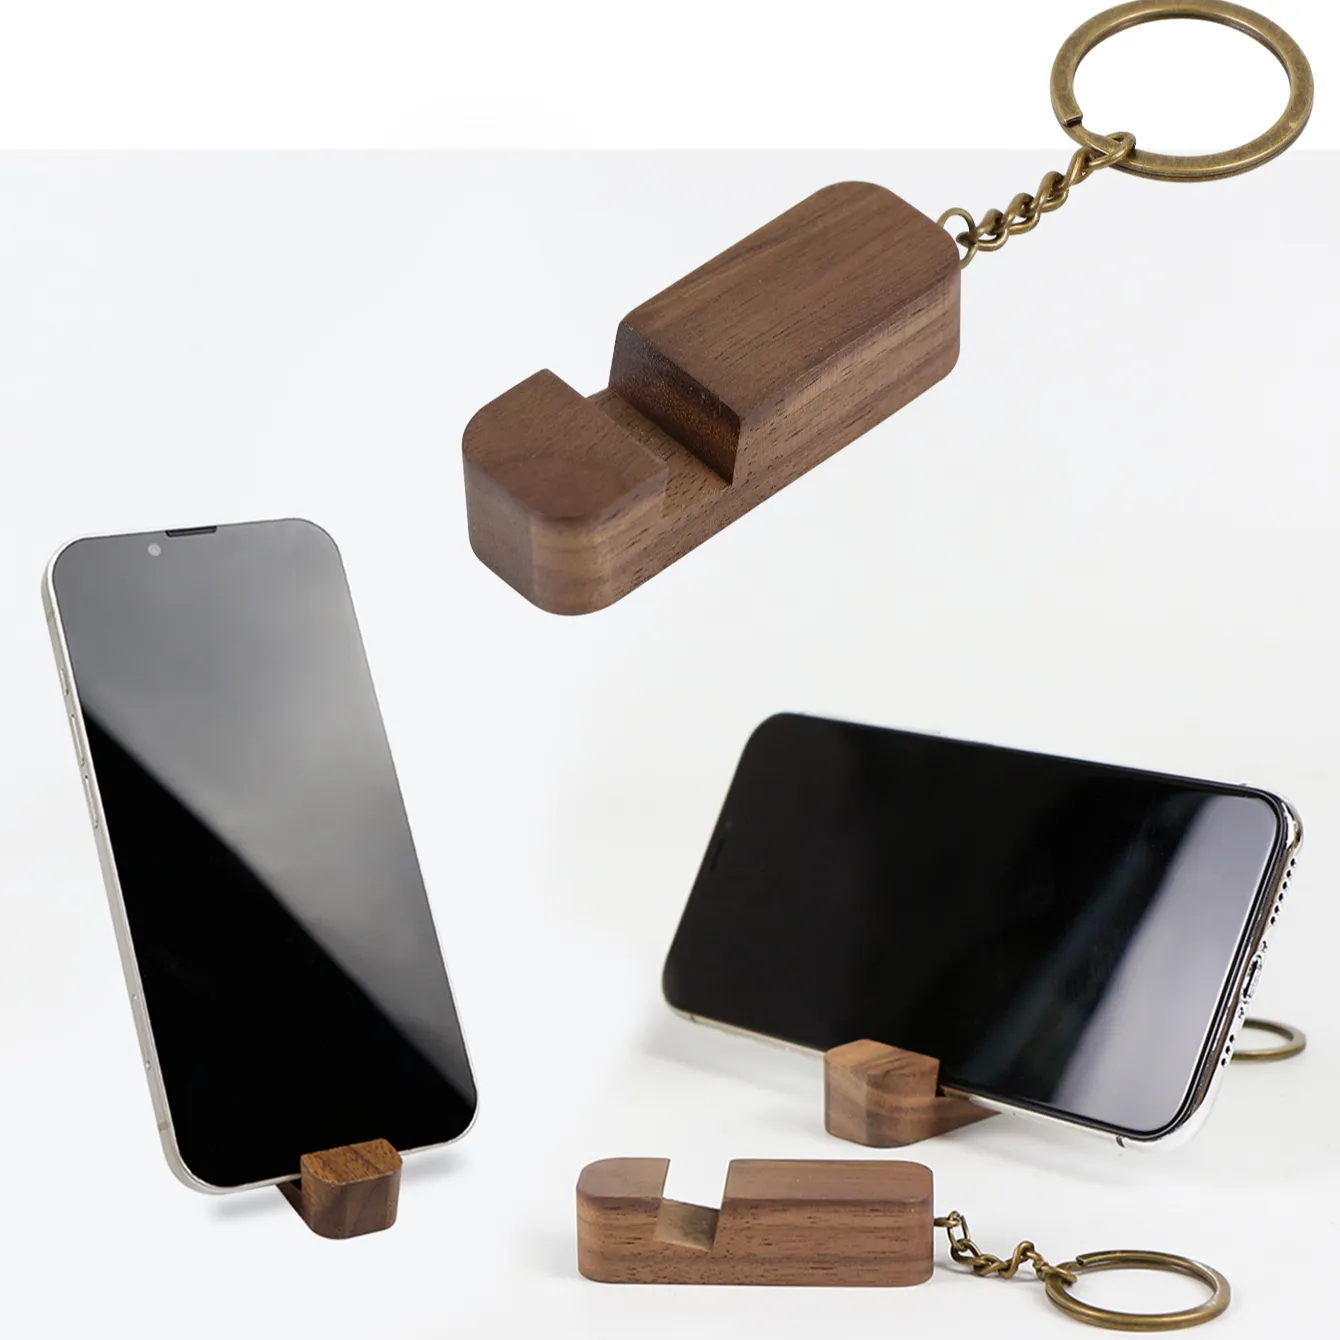 월넛 나무 인기있는 키 체인 전화 홀더 키 홀더 레이저 빈 프로모션 키 체인